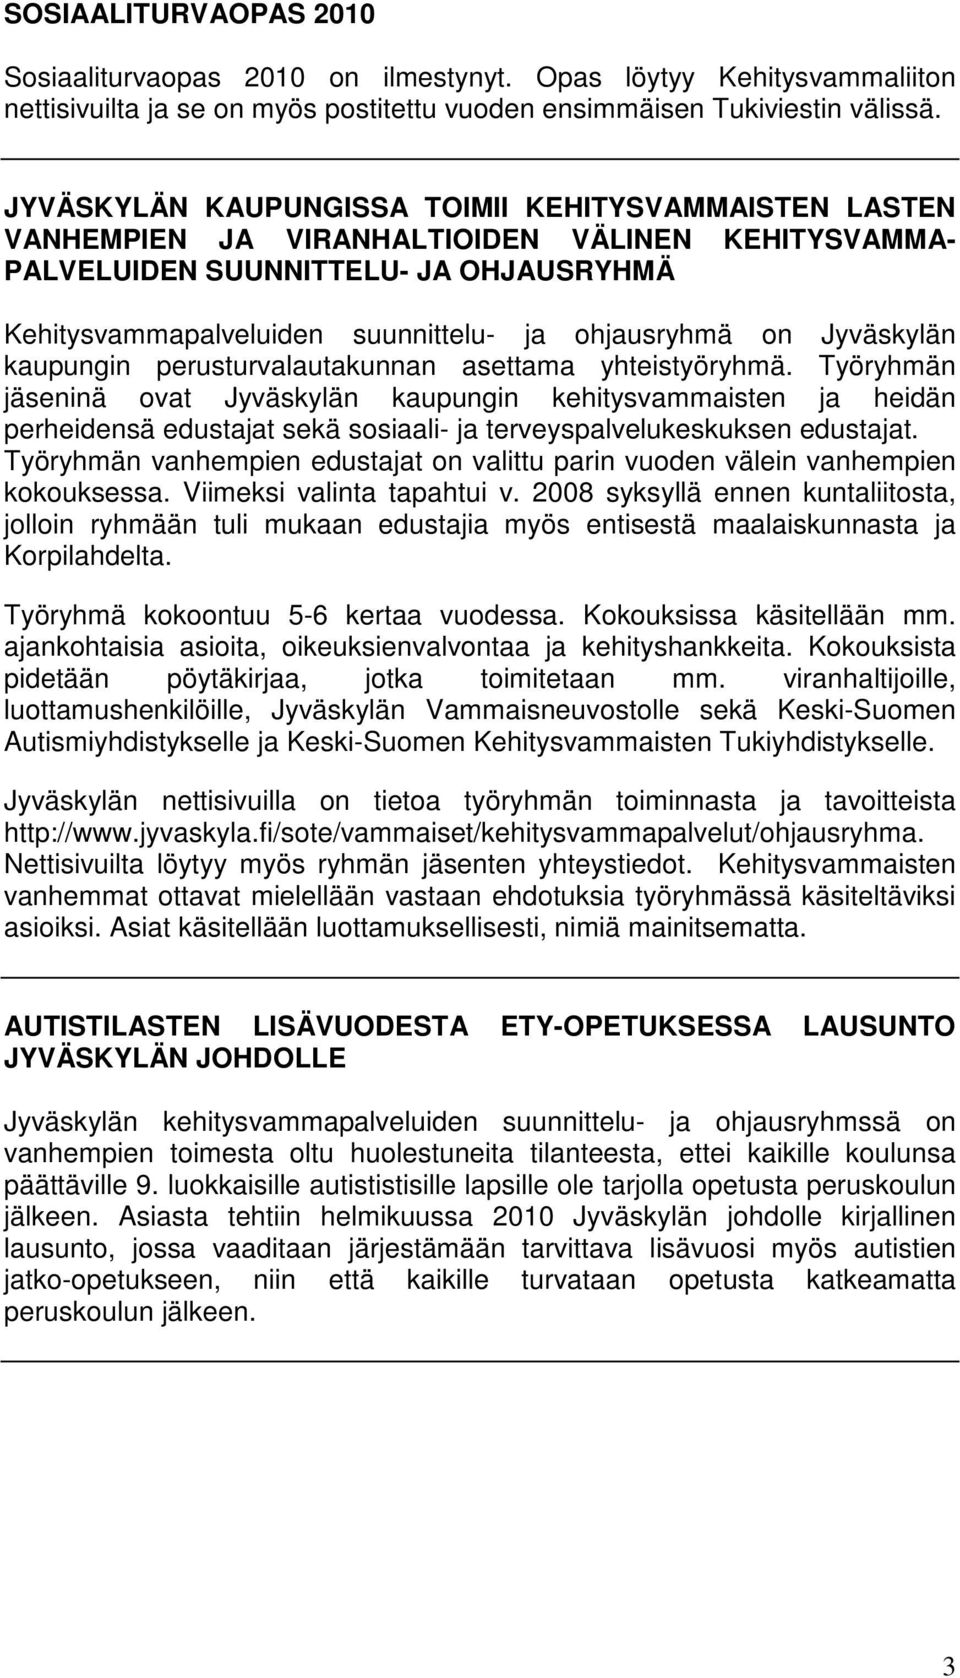 on Jyväskylän kaupungin perusturvalautakunnan asettama yhteistyöryhmä.